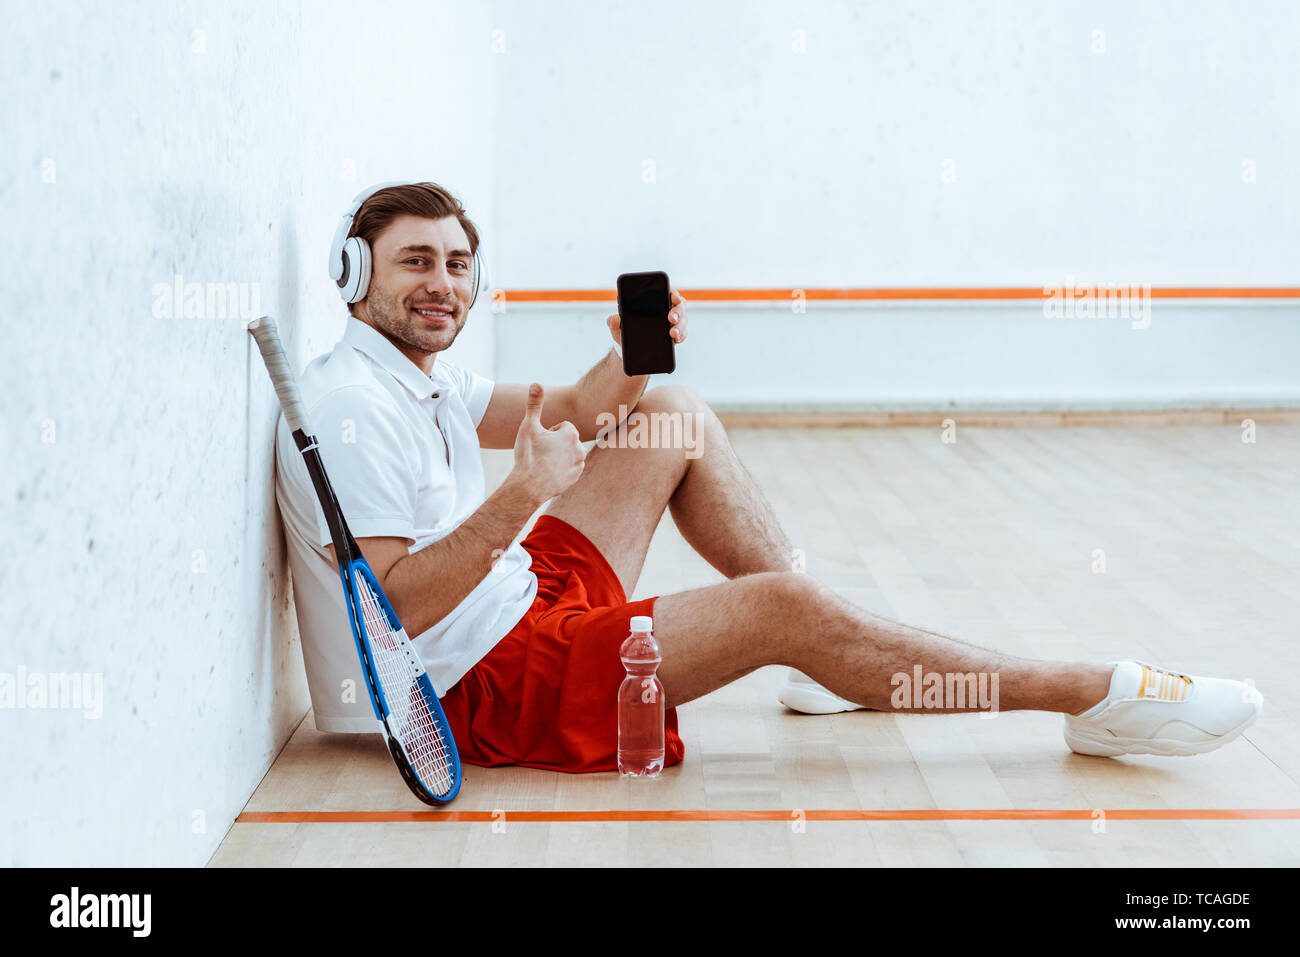 Joueuse de squash dans les écouteurs showing thumb up et holding Smartphone avec écran vide Banque D'Images